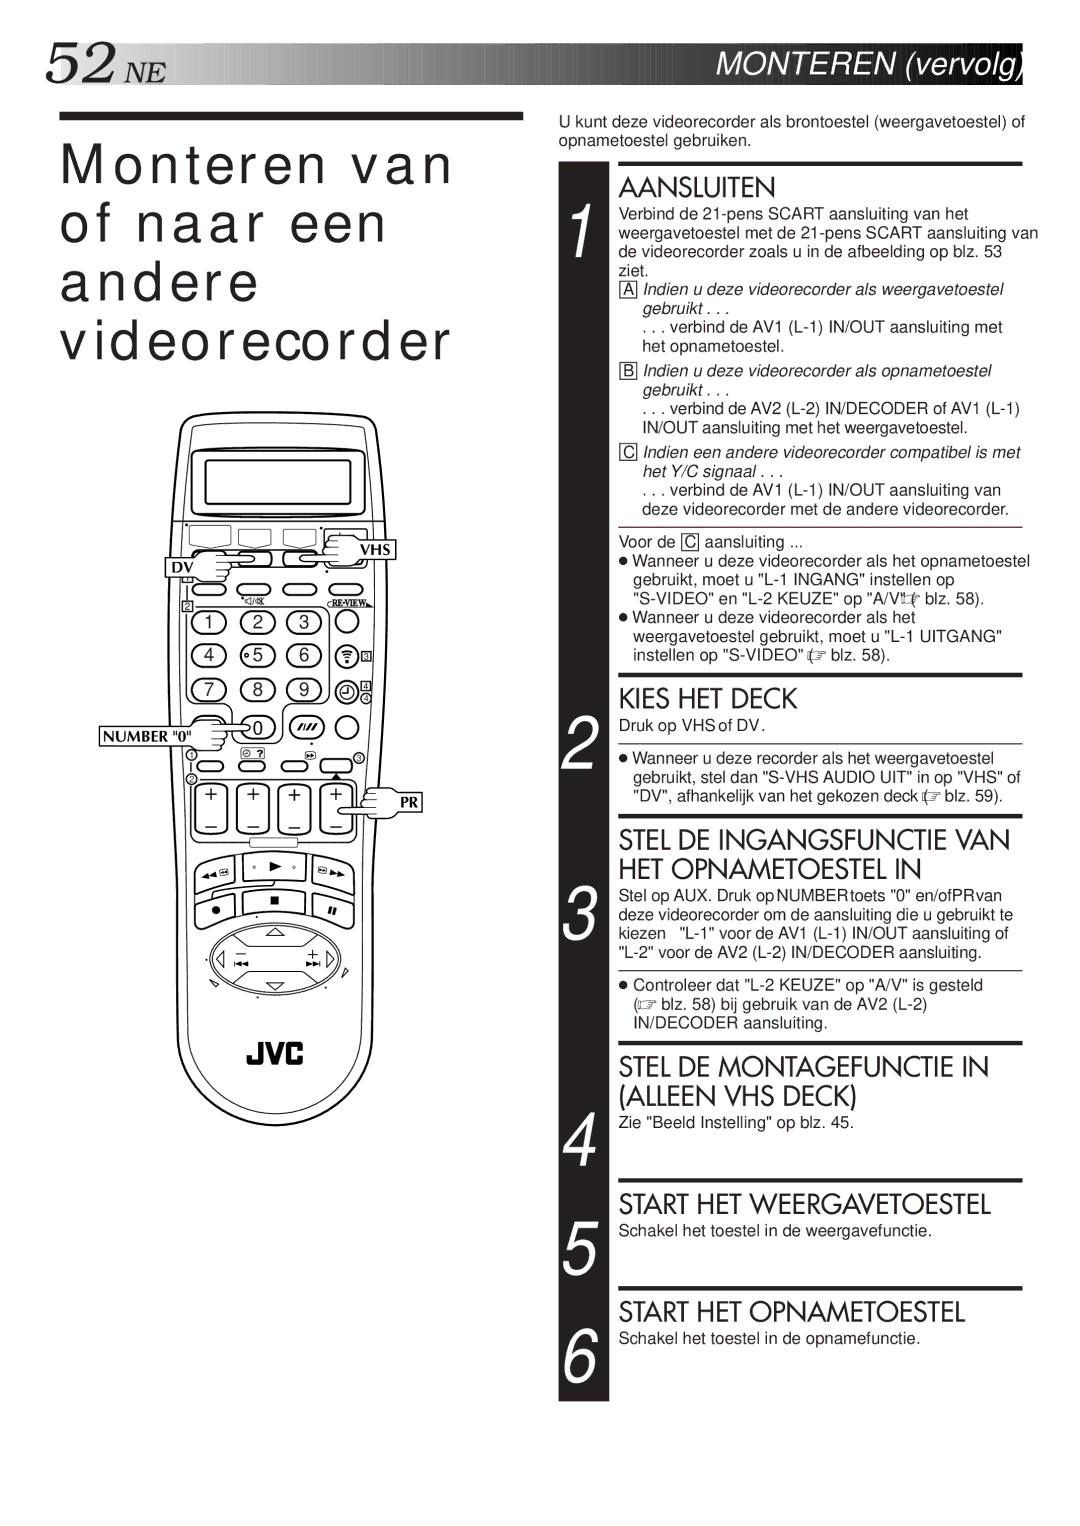 JVC HR-DVS2EU manual Monteren van of naar een andere videorecorder 